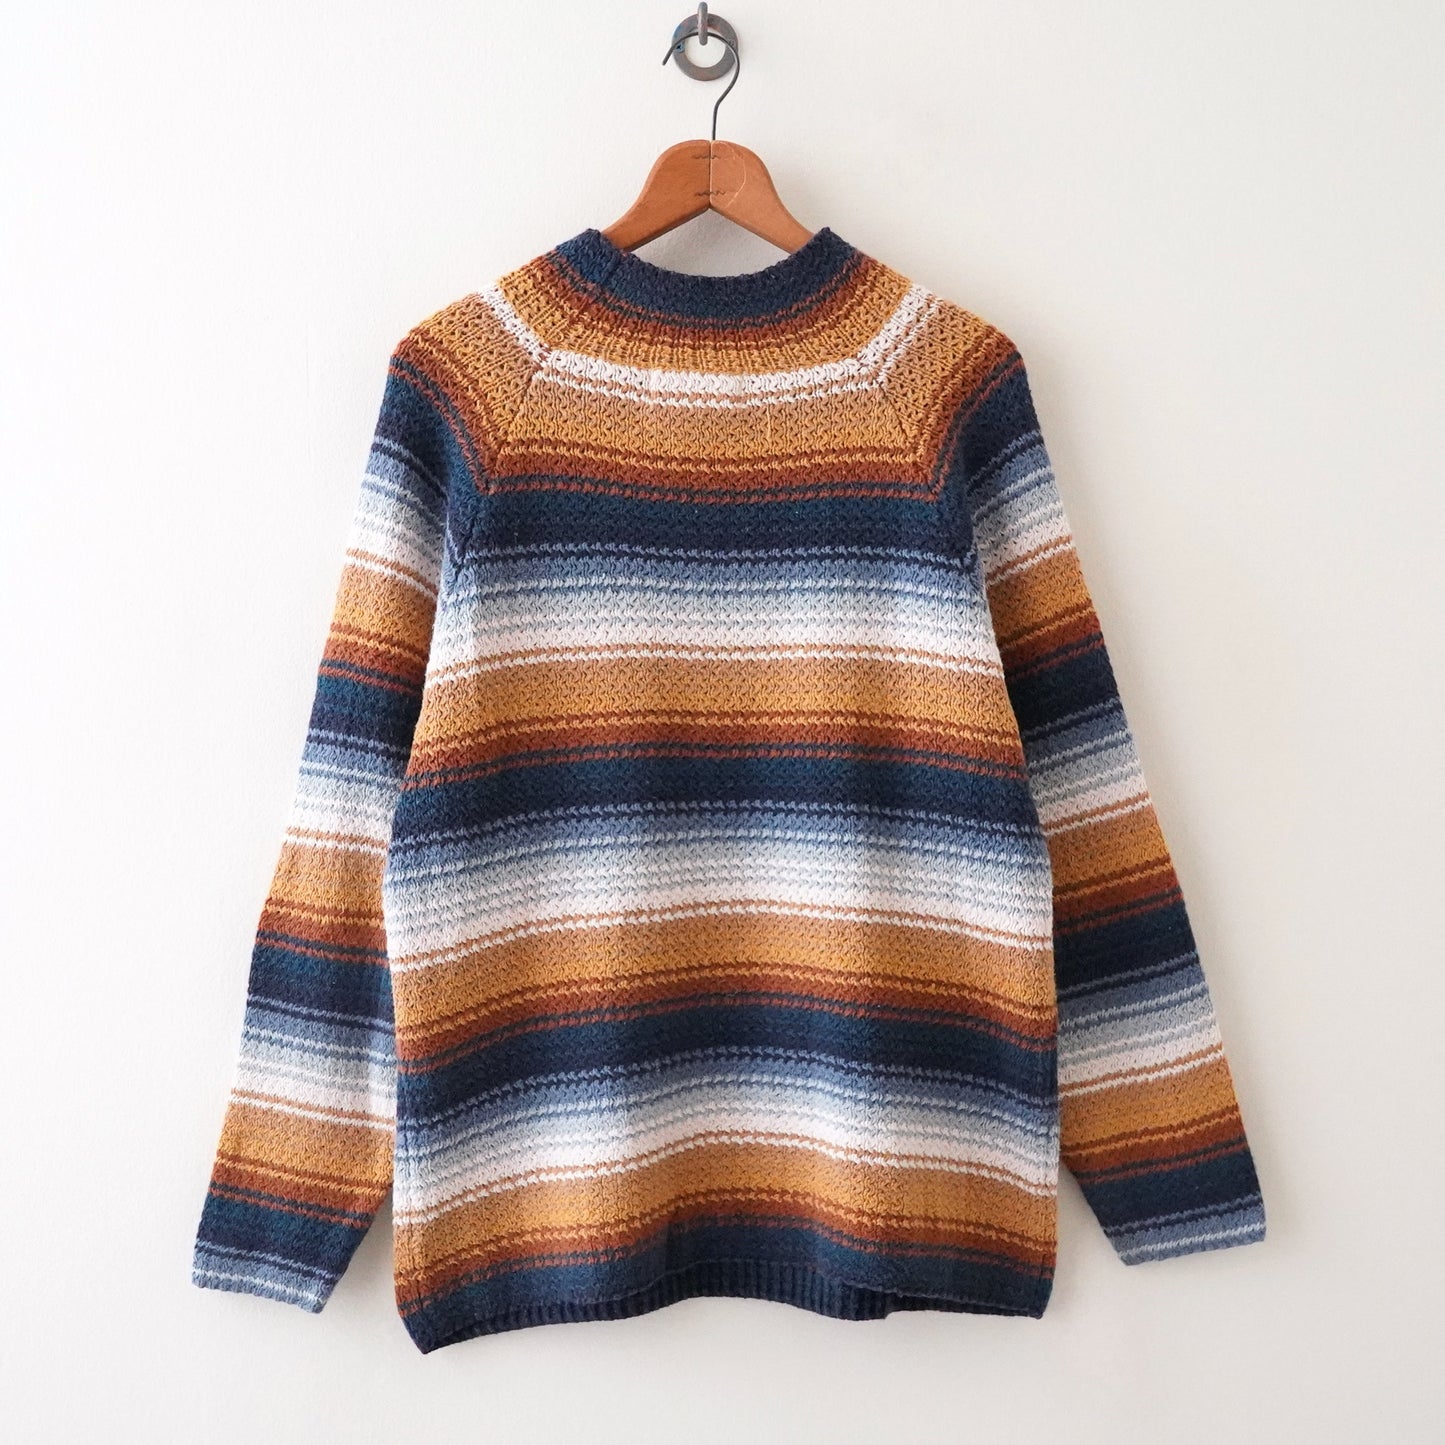 Autumn color knit